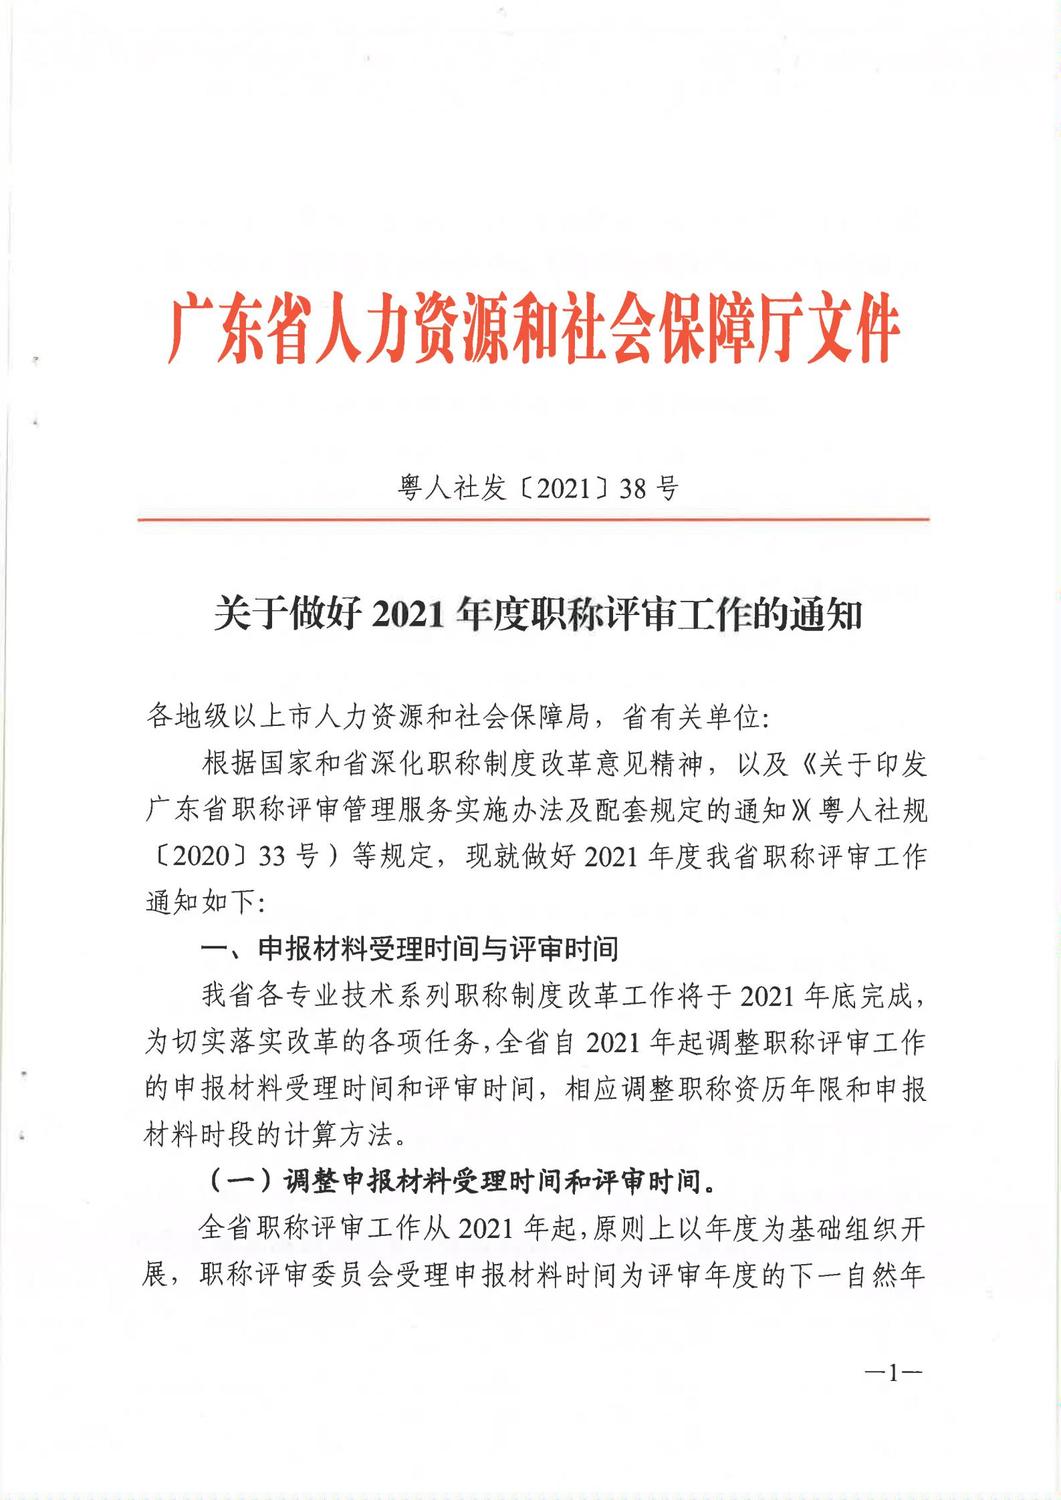 广东省人力资源和社会保障厅《关于做好2021年度职称评审工作的通知》_00.jpg